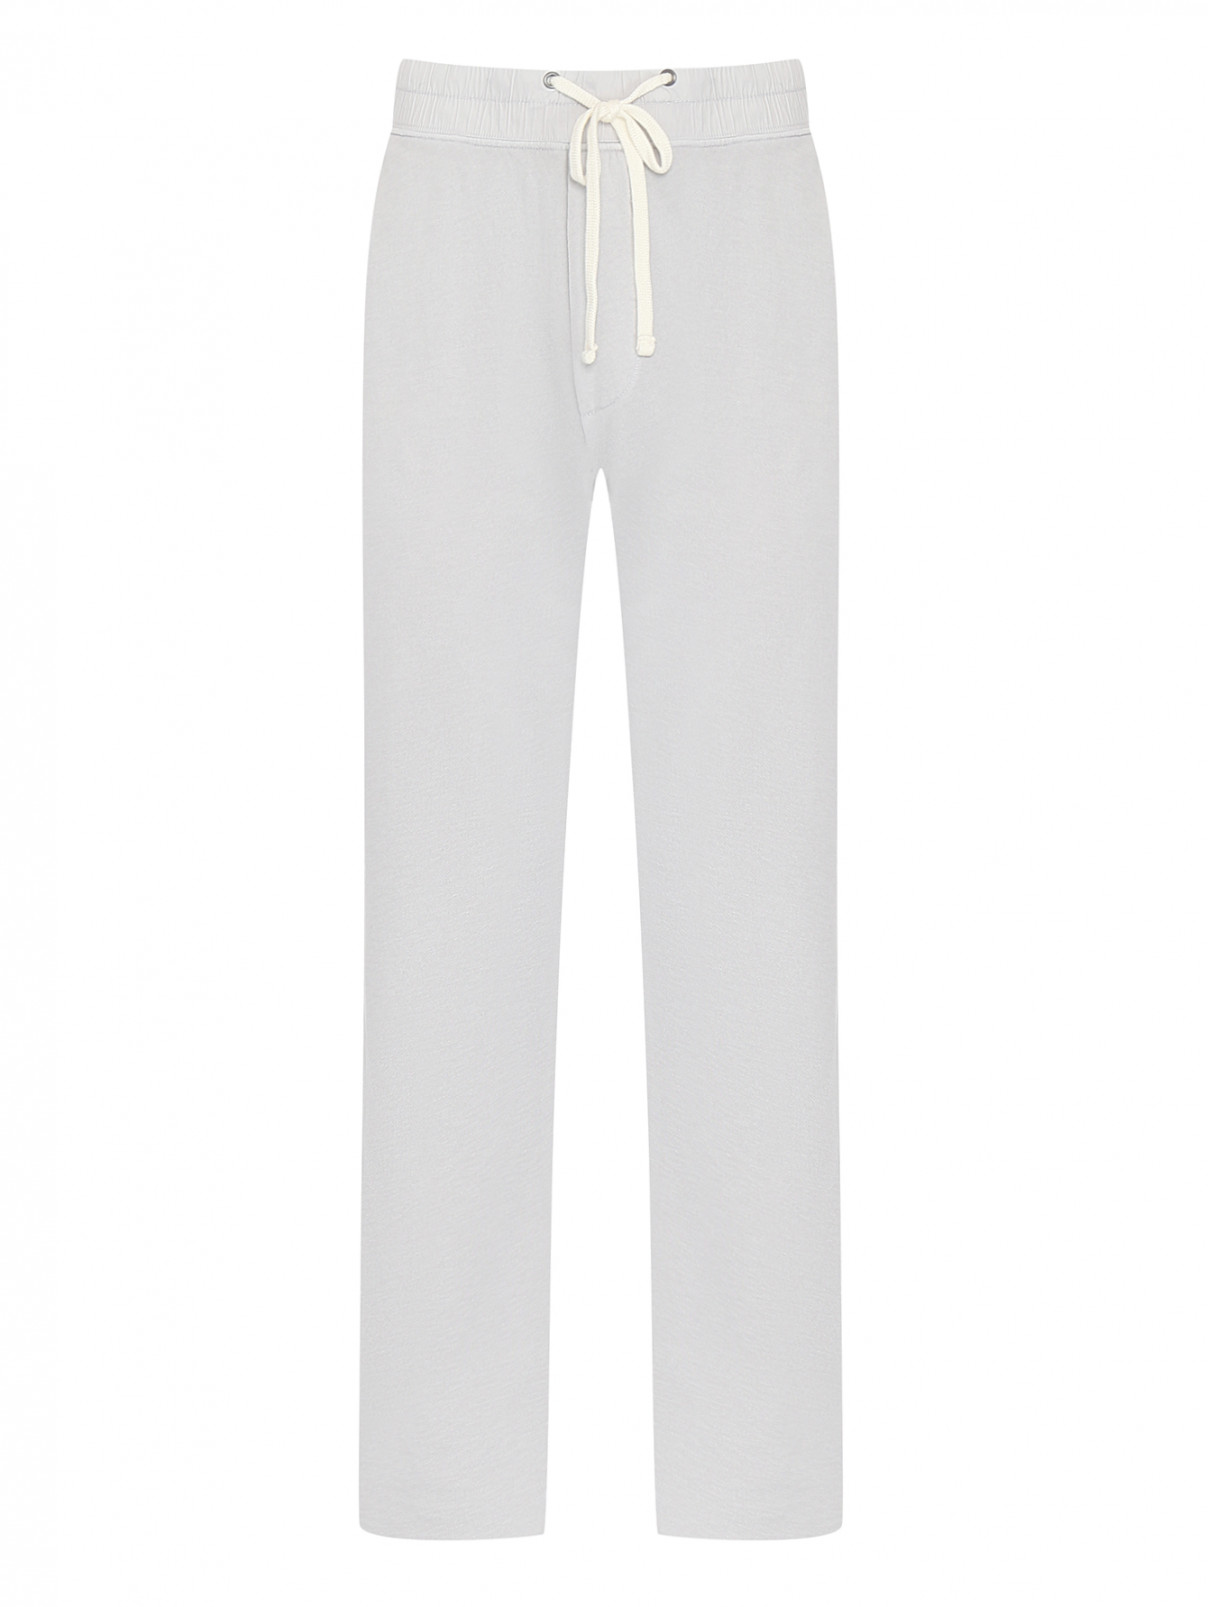 Трикотажные брюки из хлопка James Perse  –  Общий вид  – Цвет:  Серый